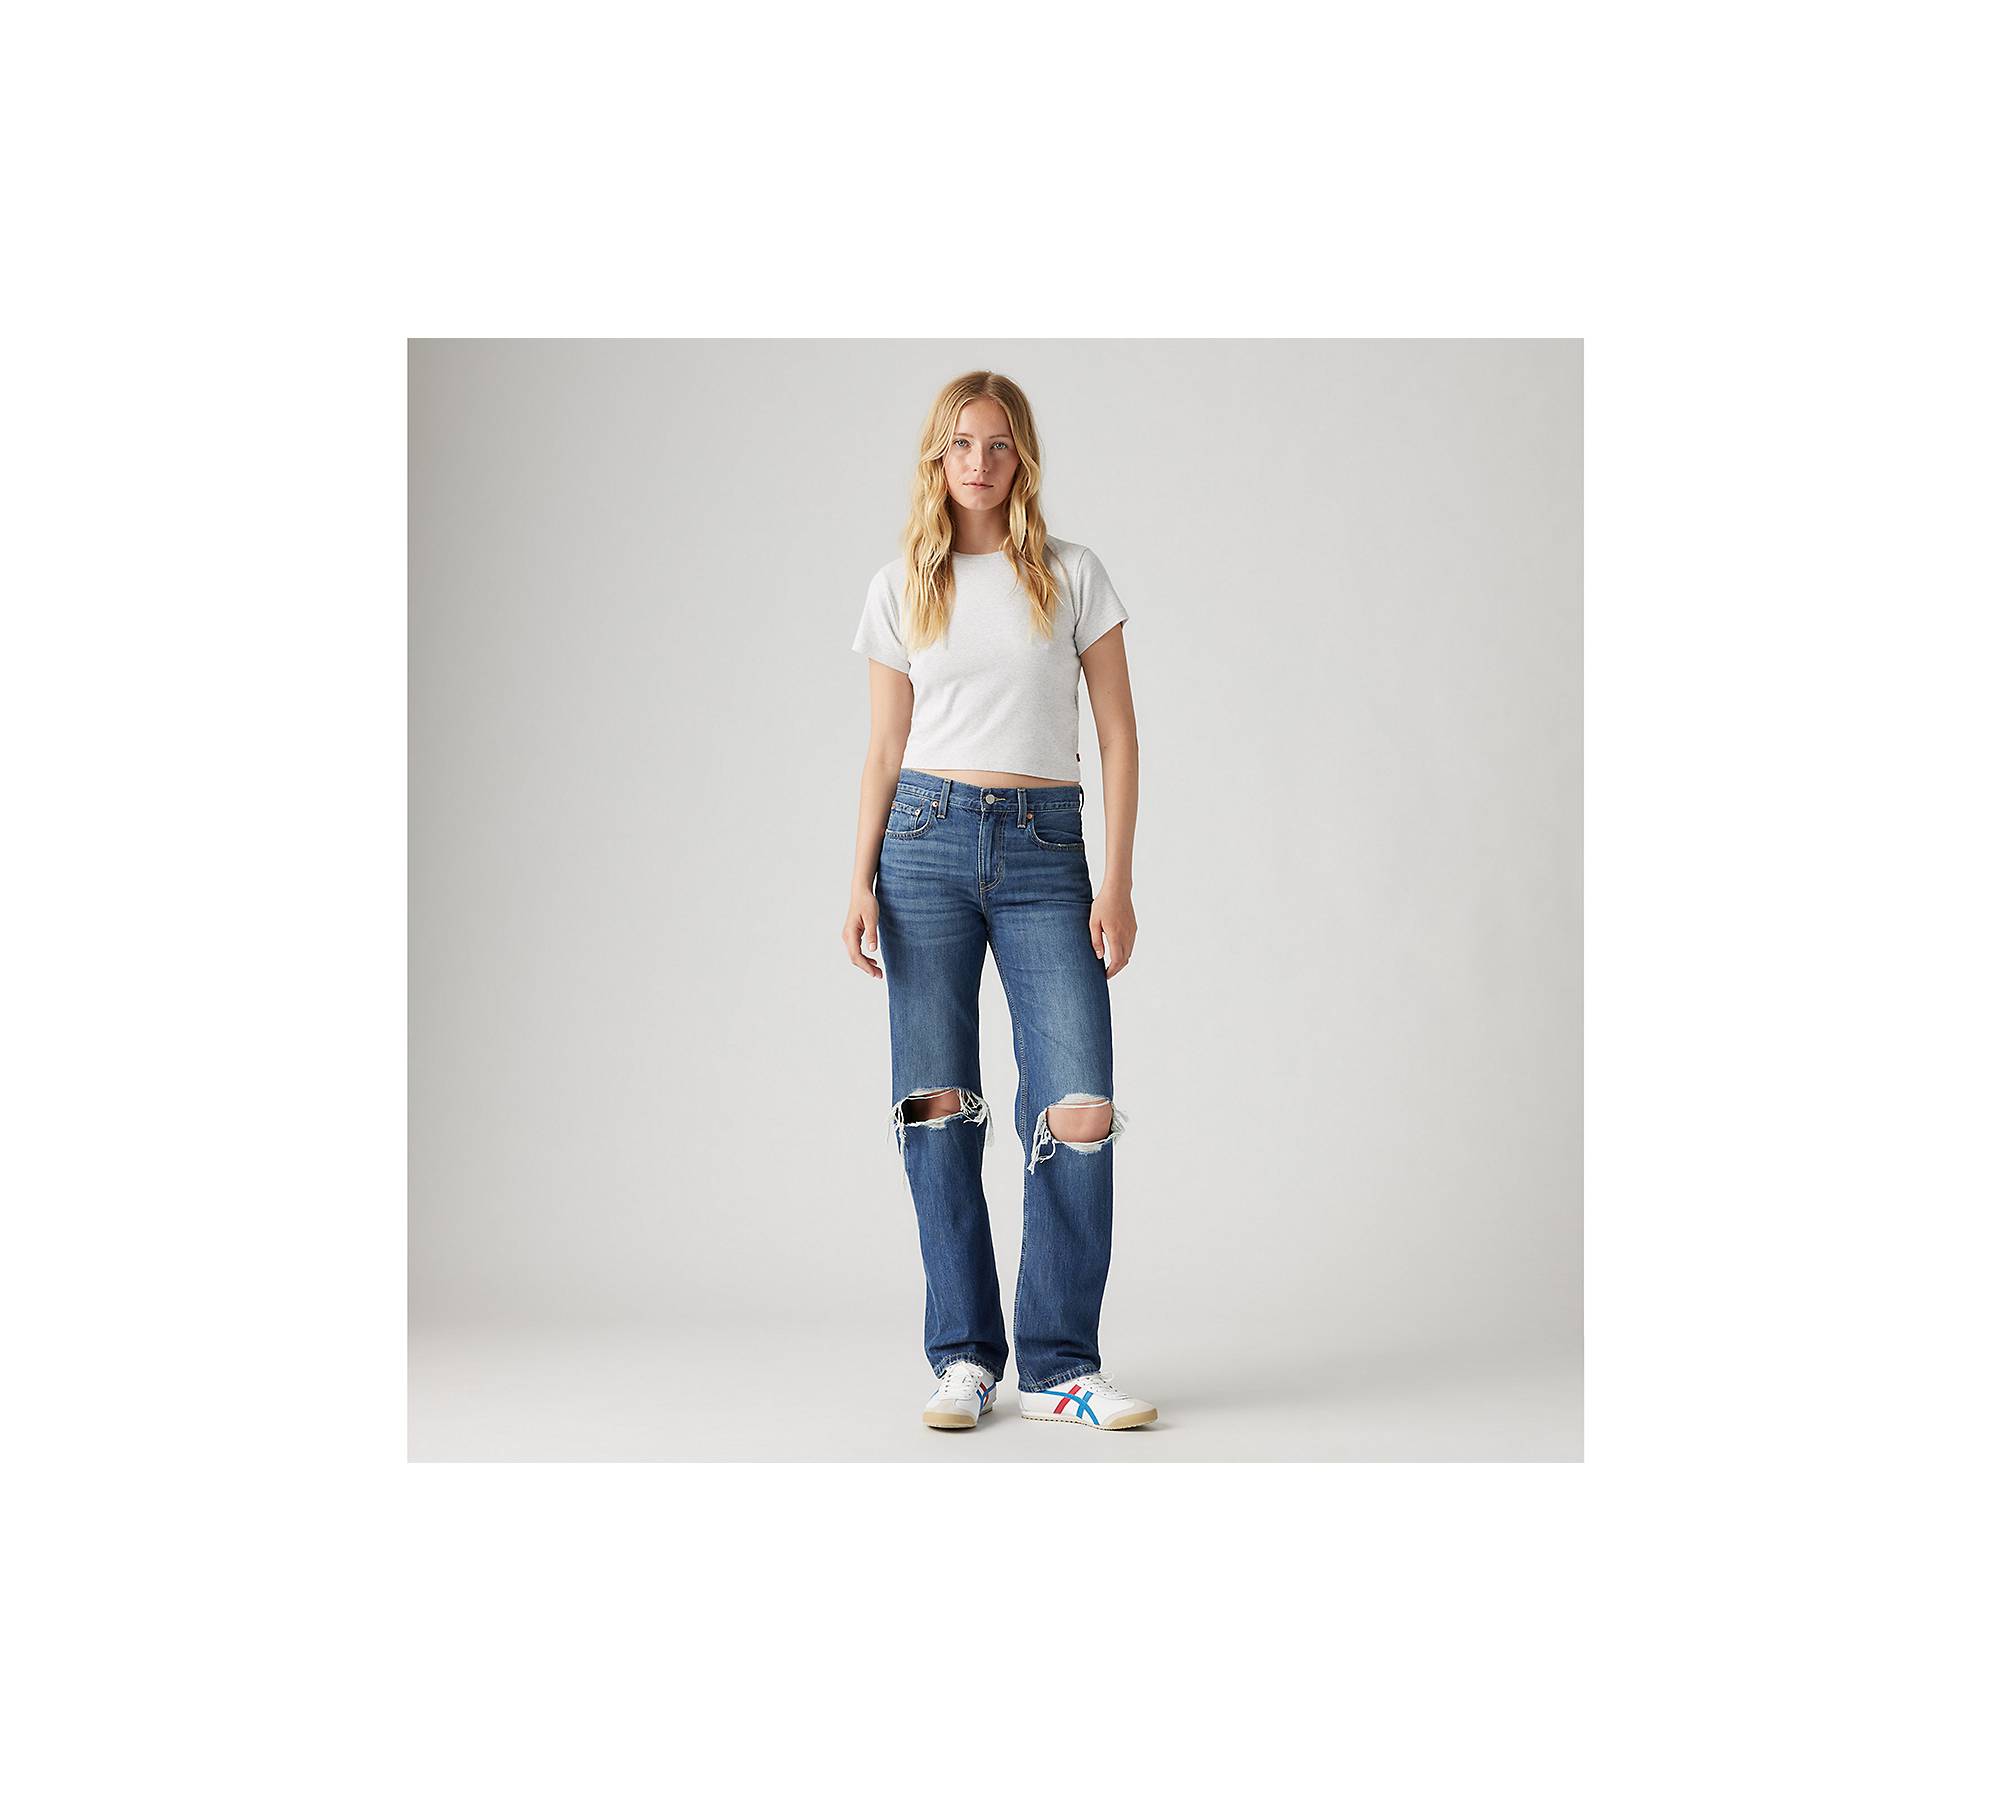 Low Pro Women's Jeans - Medium Wash | Levi's® US